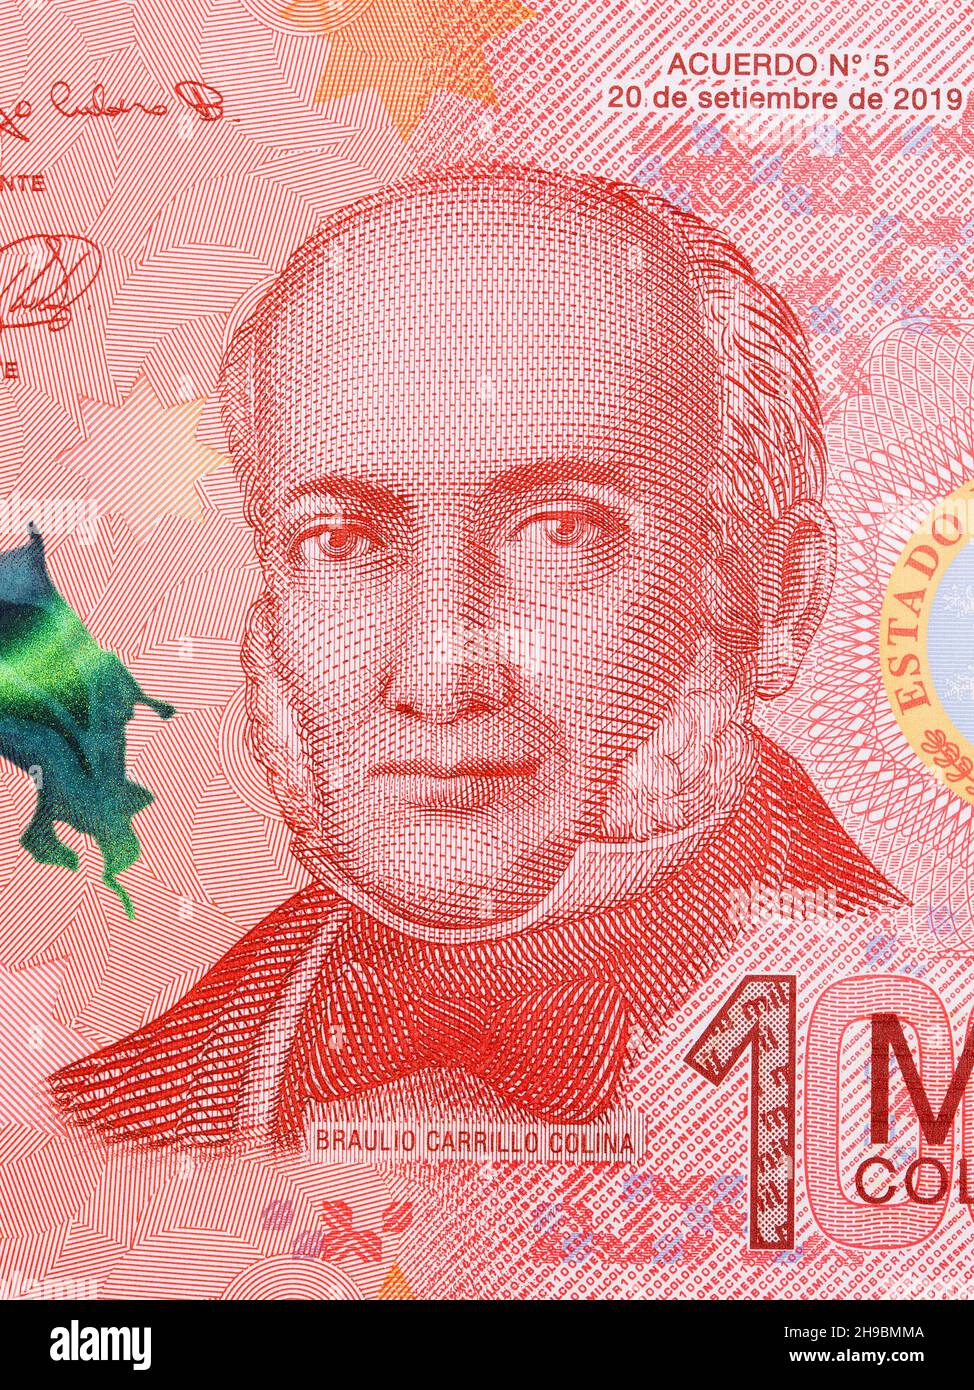 Braulio Carrillo Colina a portrait from Costa Rican money - Colon Stock Photo